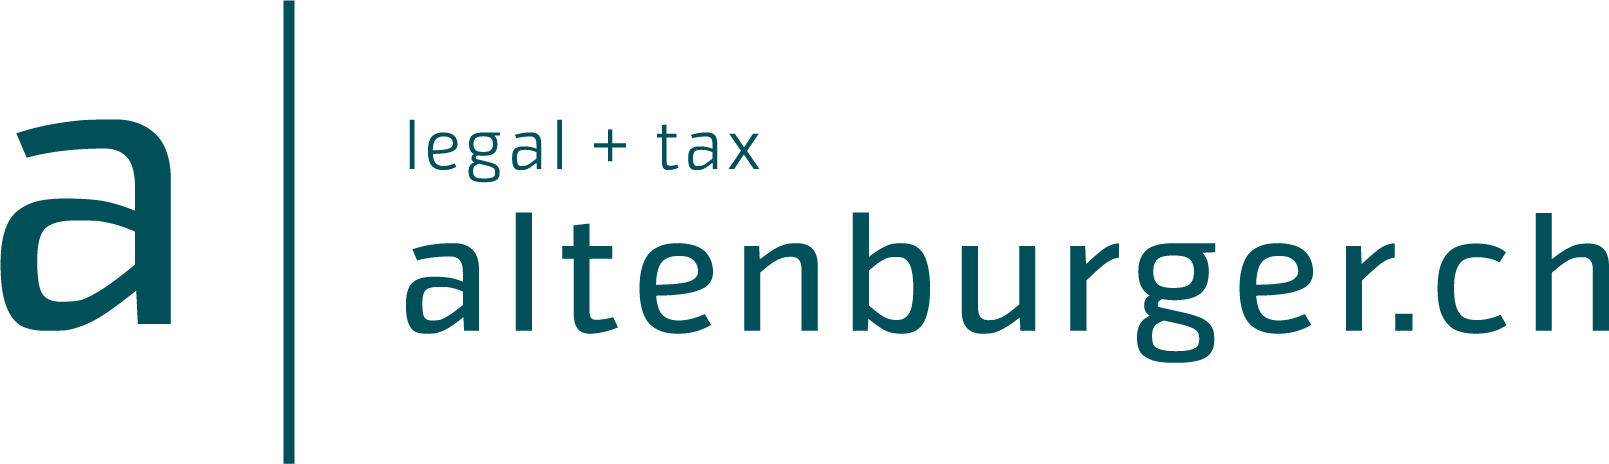 Altenburger Ltd legal + tax